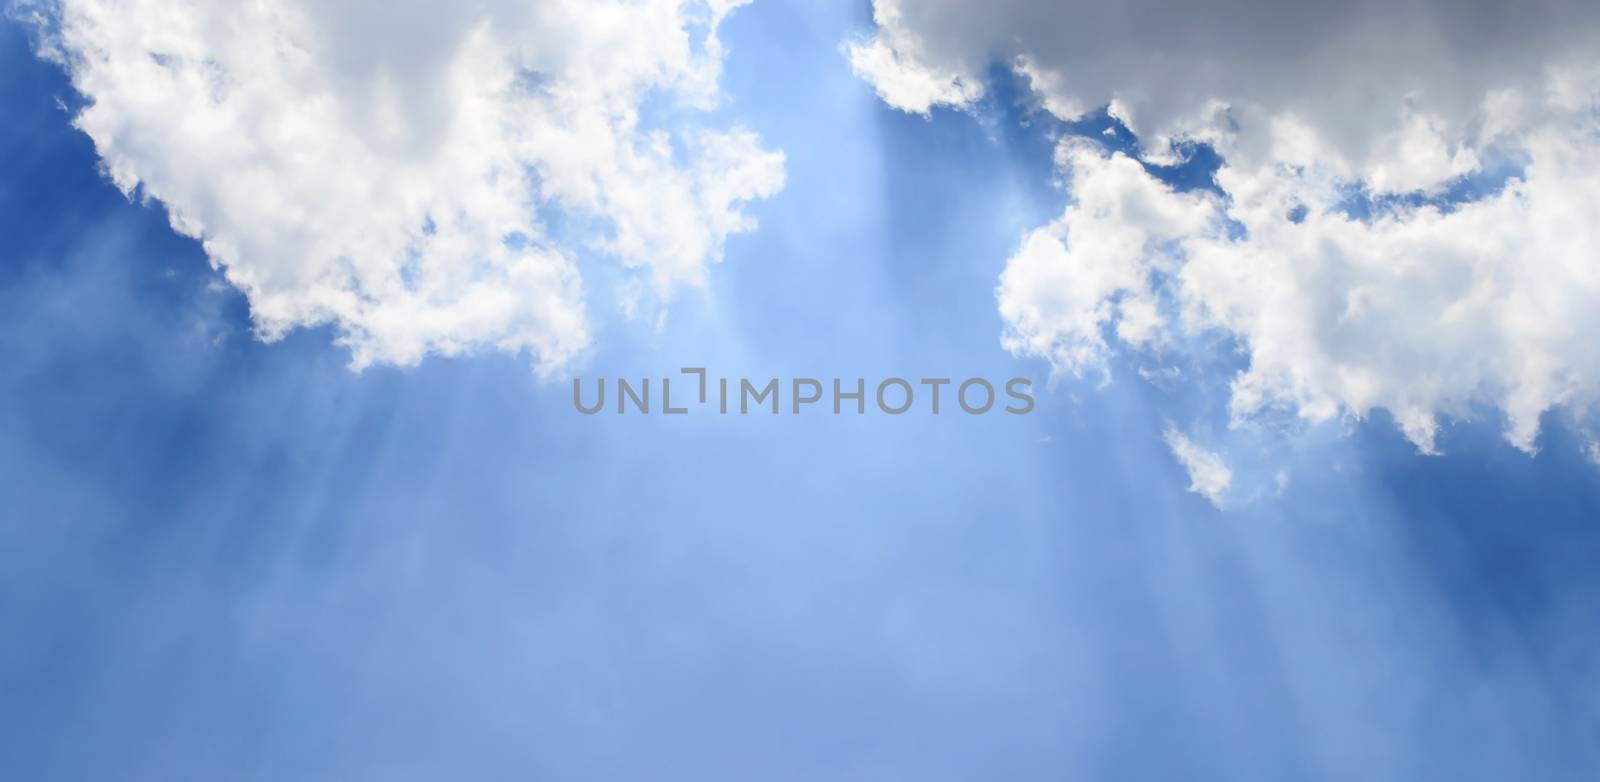 Sunbeam and Cloudy Blue Sky by kobfujar